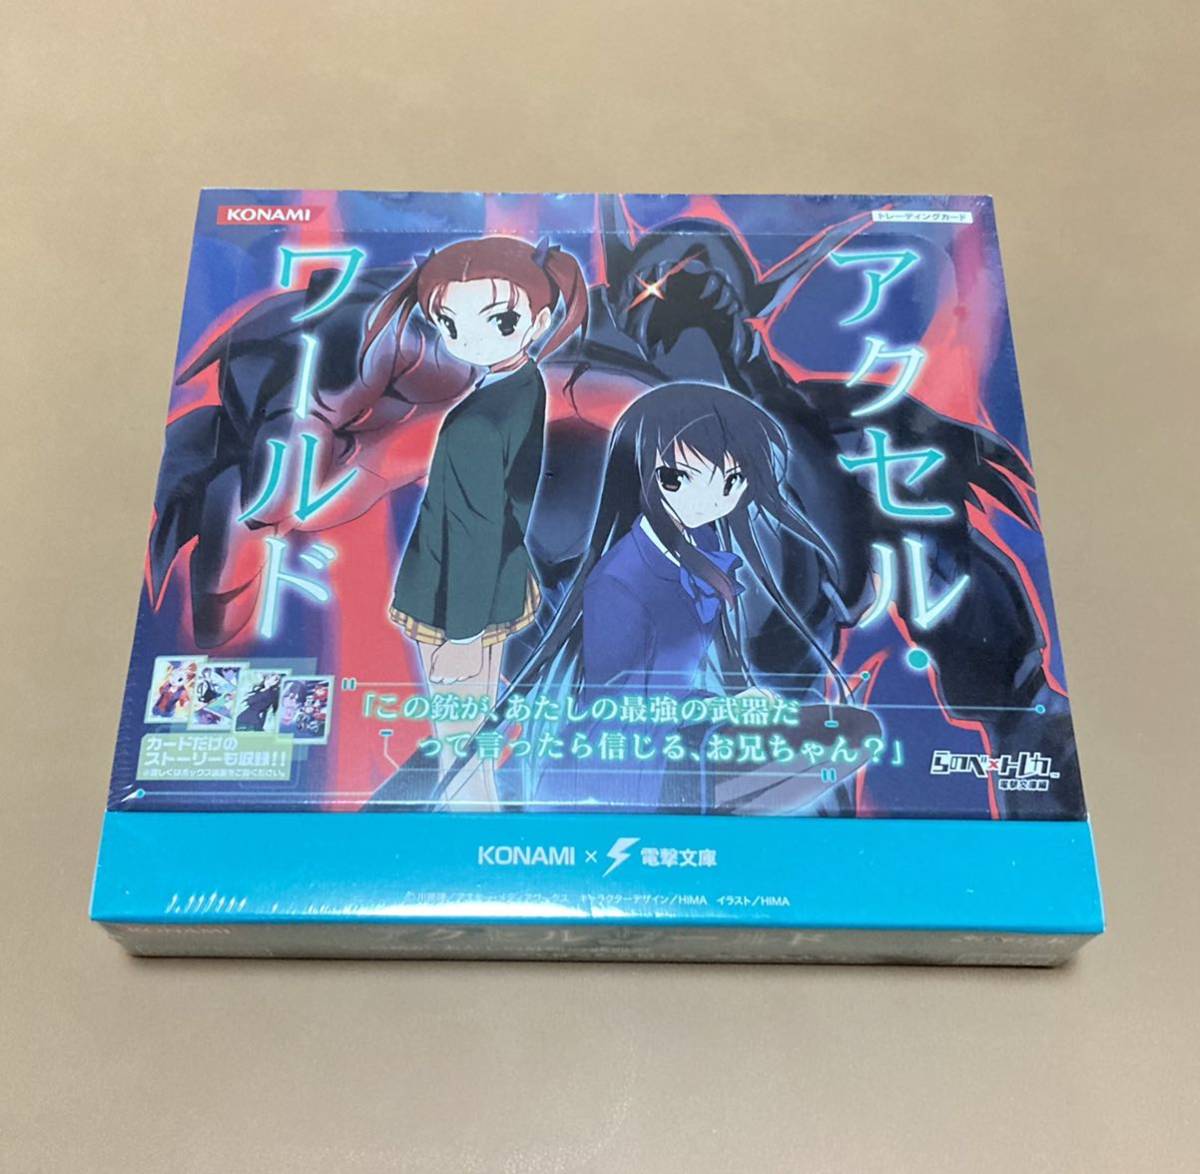 アクセル・ワールド トレーディングカード 未開封BOX 黒雪姫 ハルユキ シュリンク付き KONAMIの画像1